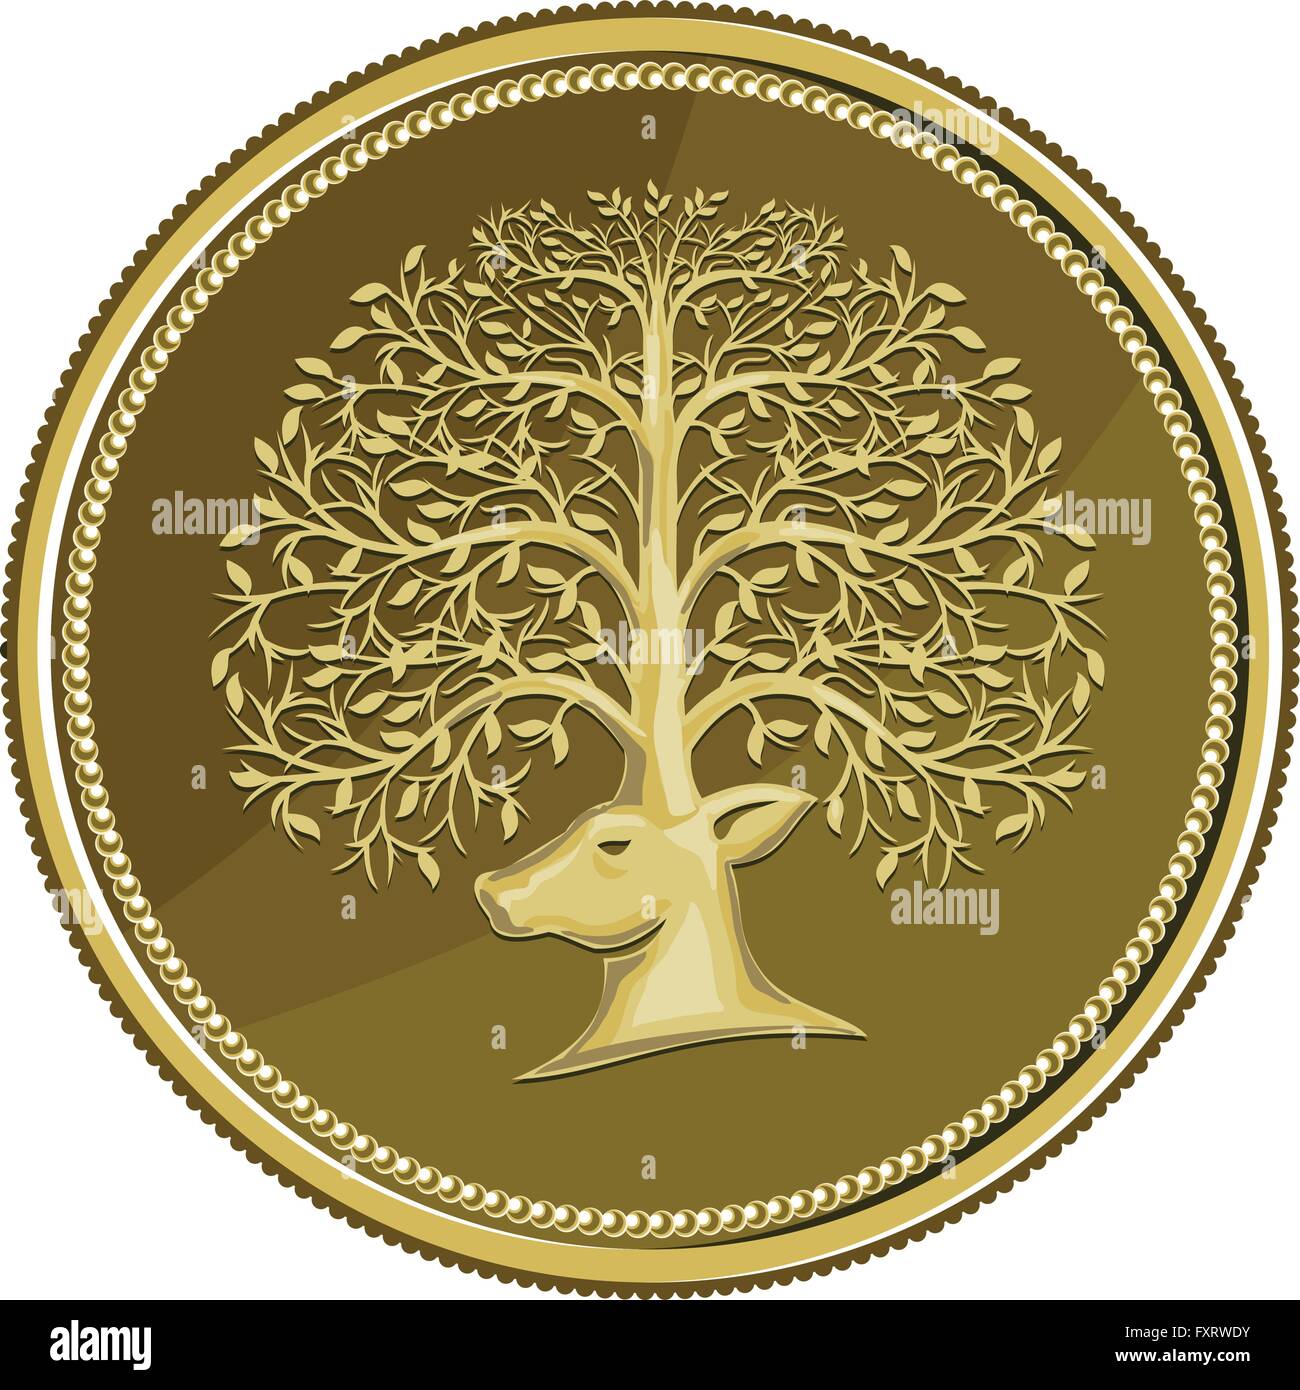 Illustrazione di una testa di cervo visto dal lato con corna fatte di rami di alberi e foglie insieme all'interno della moneta in oro medaglione fatto in stile retrò. Illustrazione Vettoriale